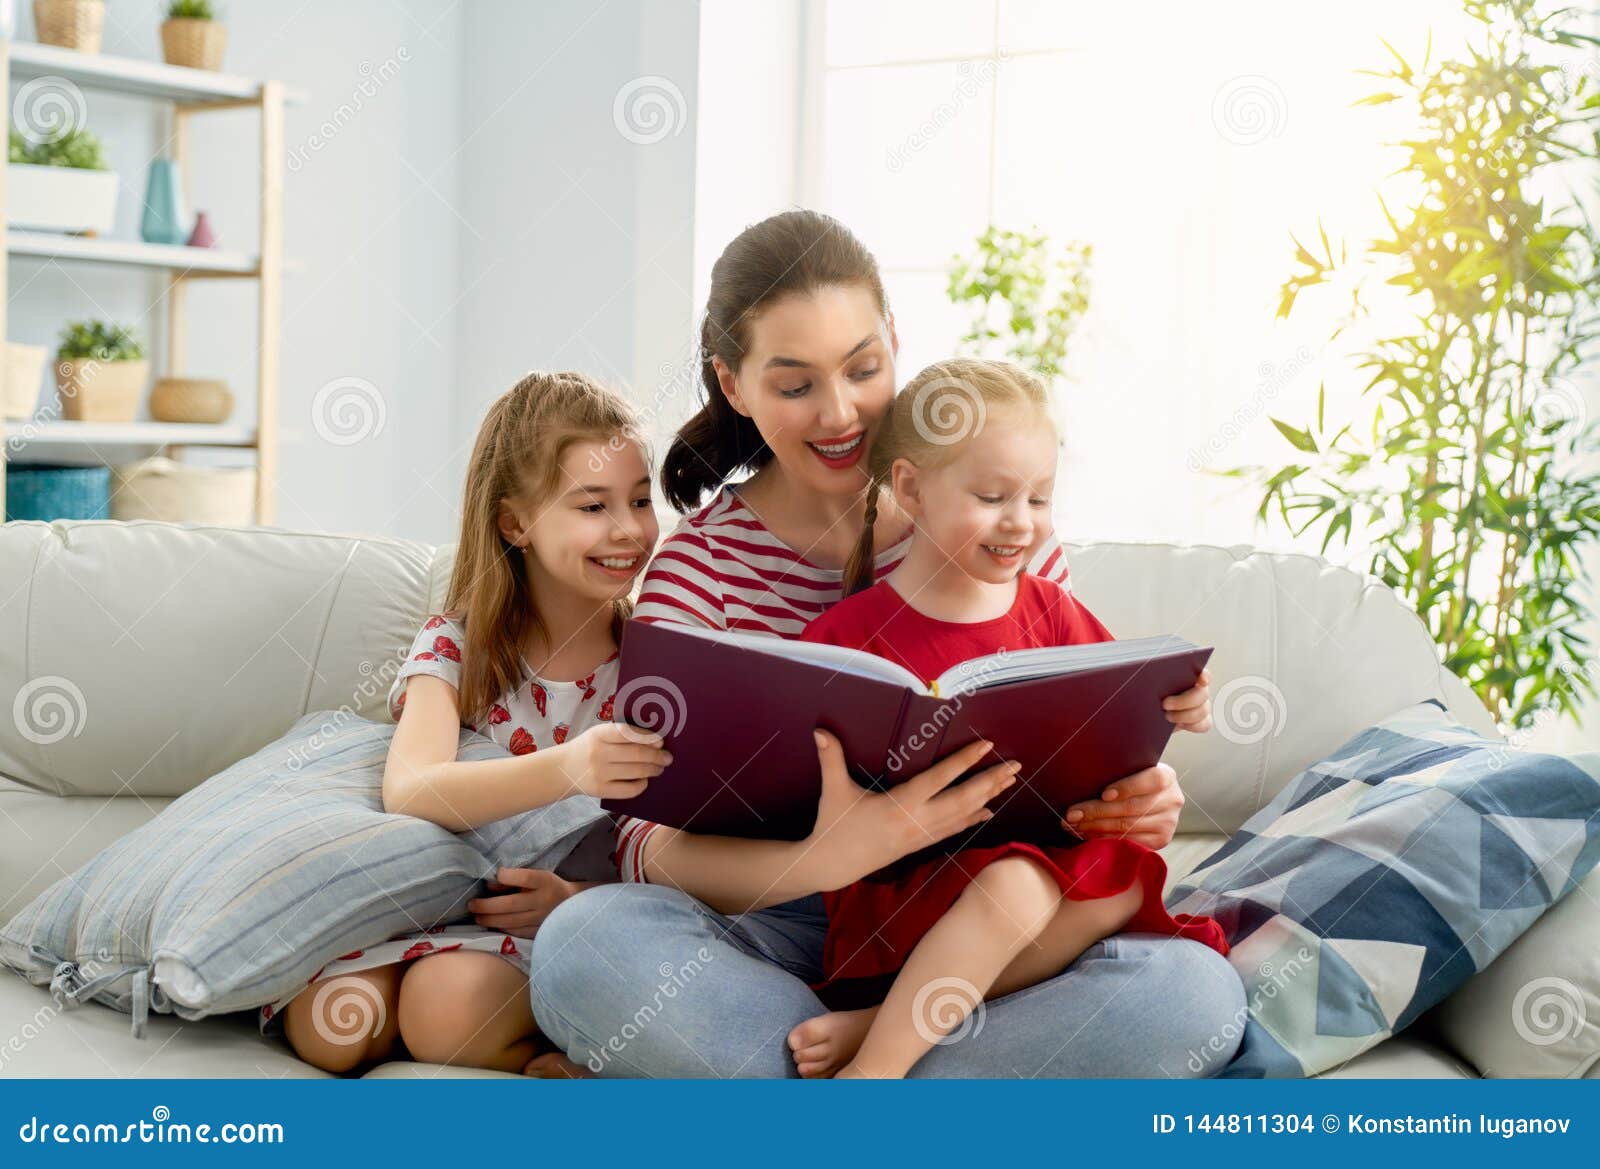 Читать мама с другом. Читает семья читает Страна. Читающая семья. Xbnftn ctvmz xbnfytn cnhfyf. Семья читает книгу.